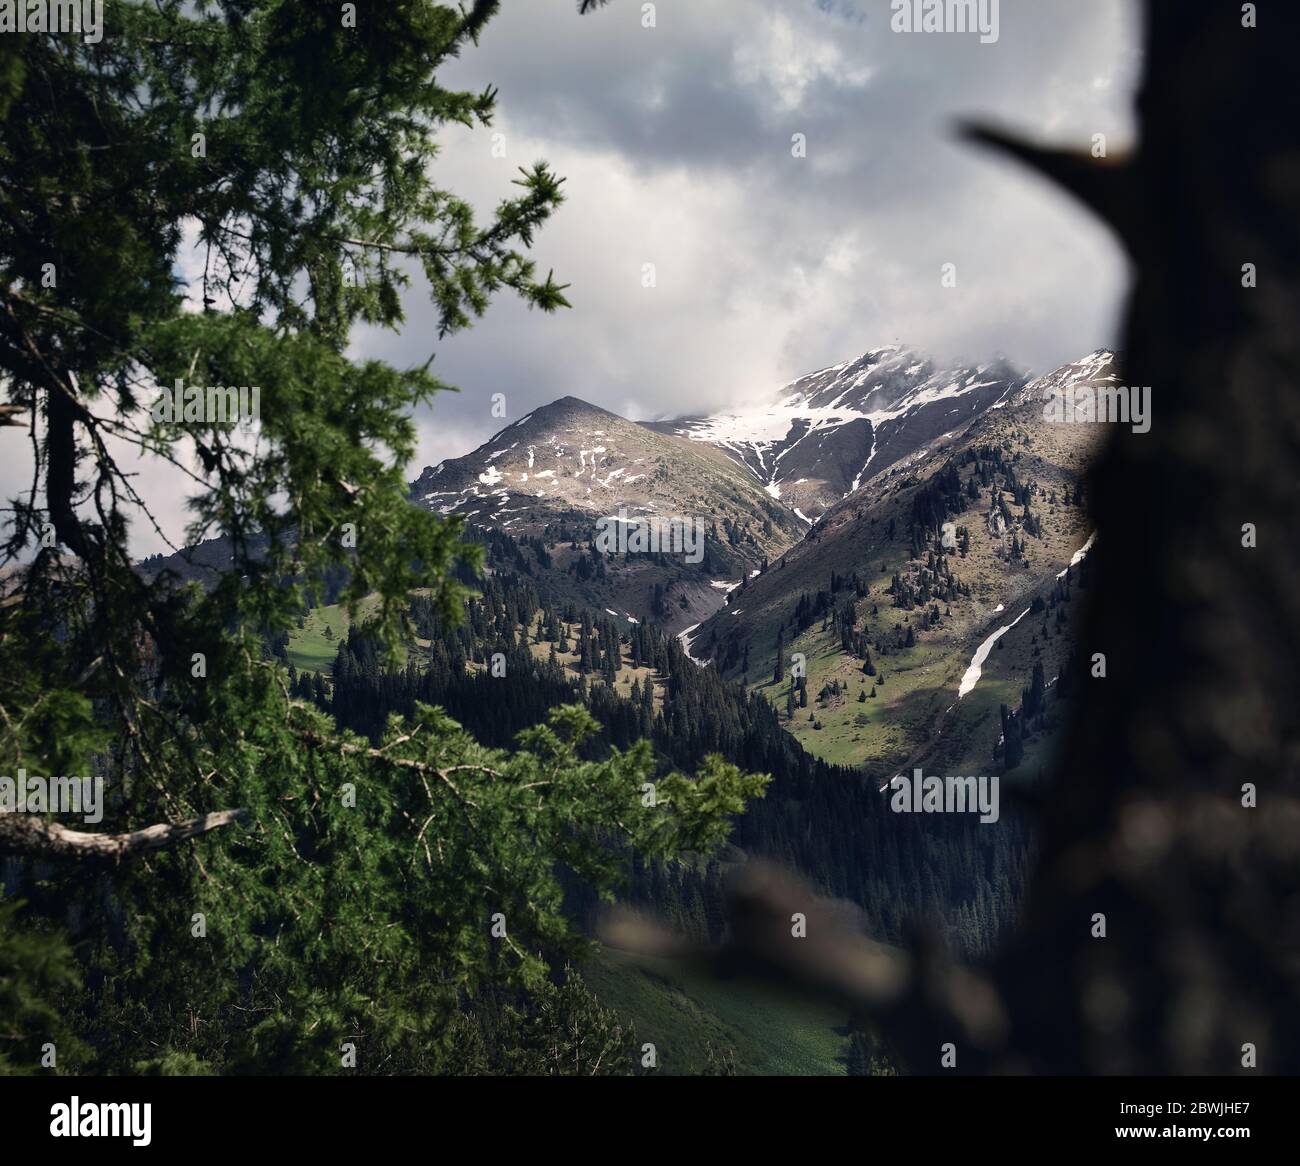 Splendido paesaggio idilliaco di pineta nella valle di montagna in un giorno nuvoloso Foto Stock